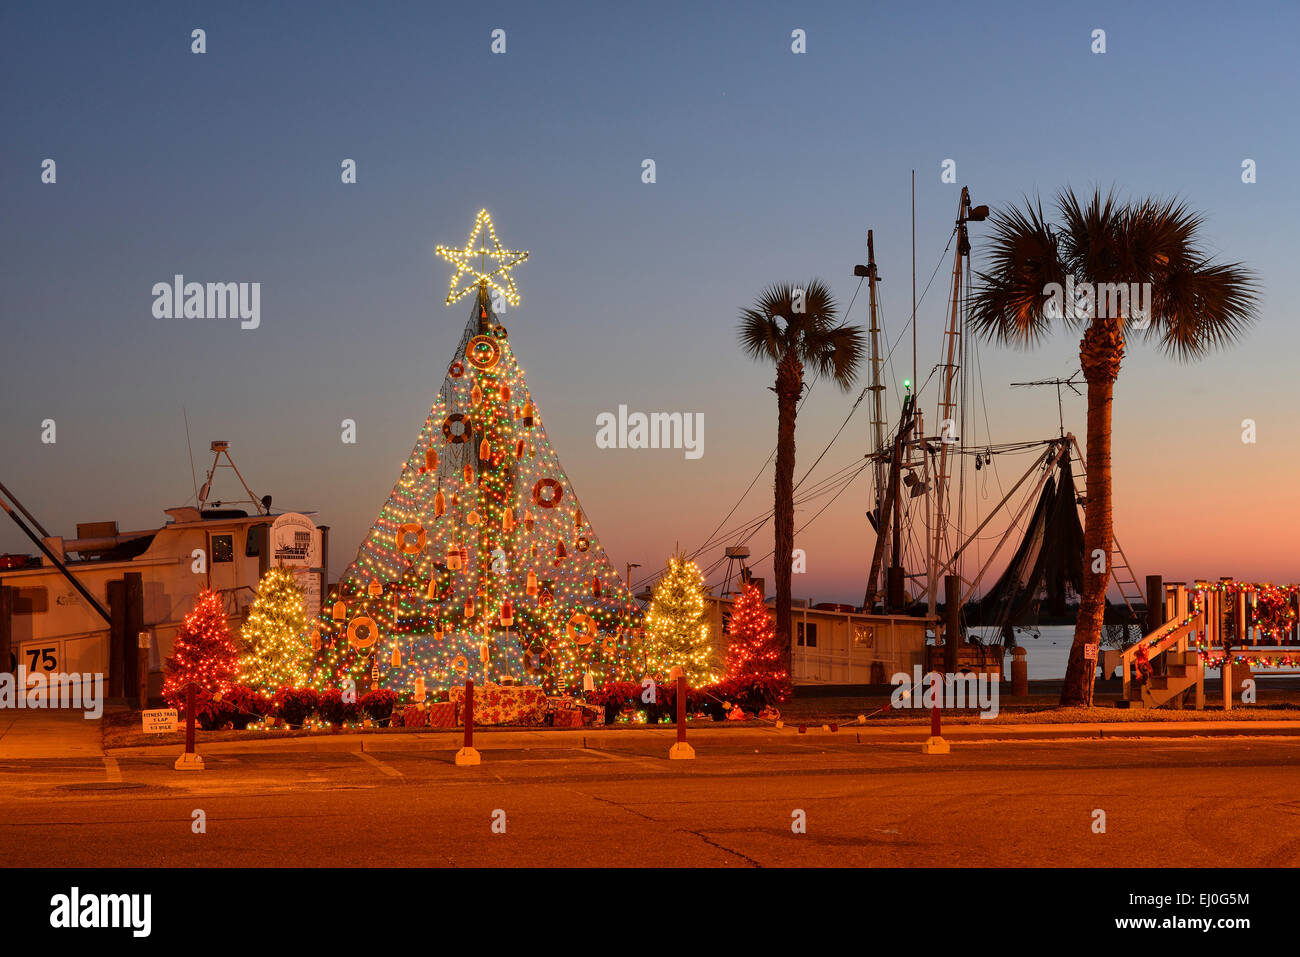 USA, Florida, Franklin County, Apalachicola, Christmas tree along the docks, Stock Photo